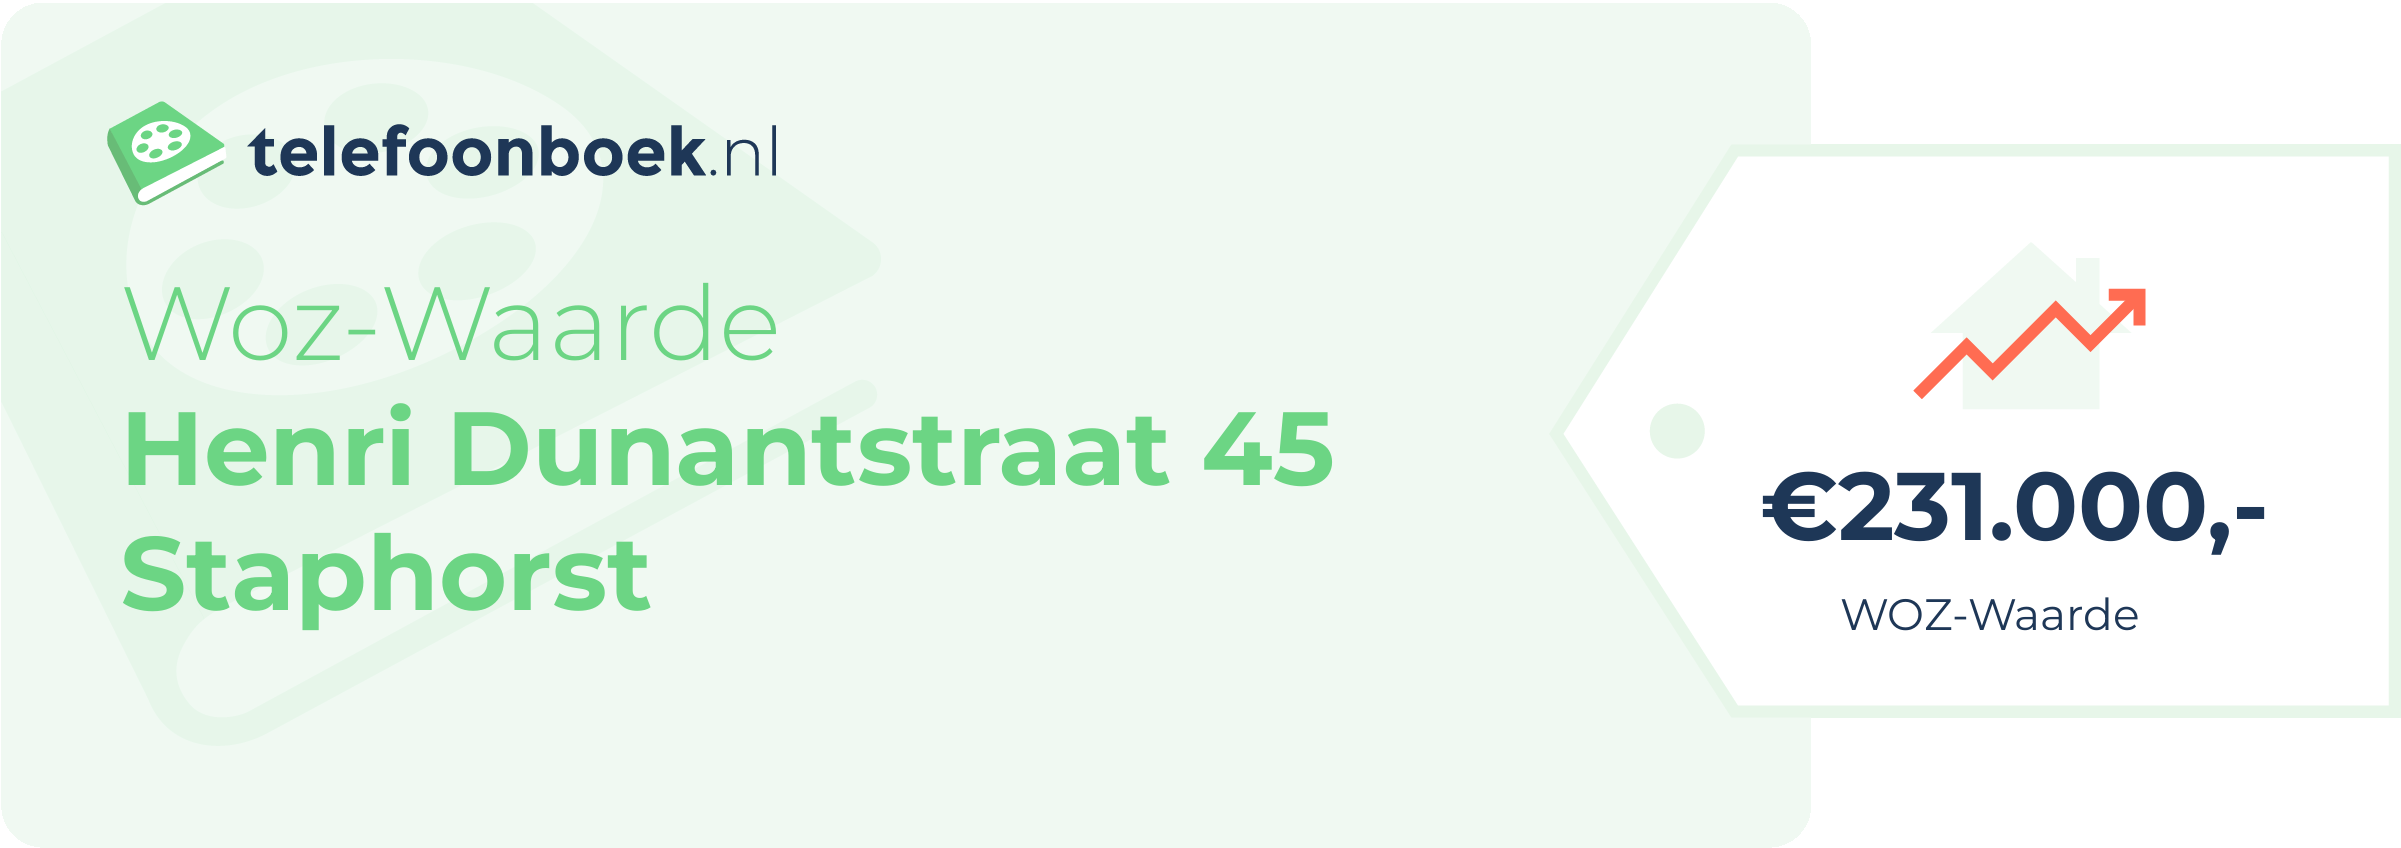 WOZ-waarde Henri Dunantstraat 45 Staphorst